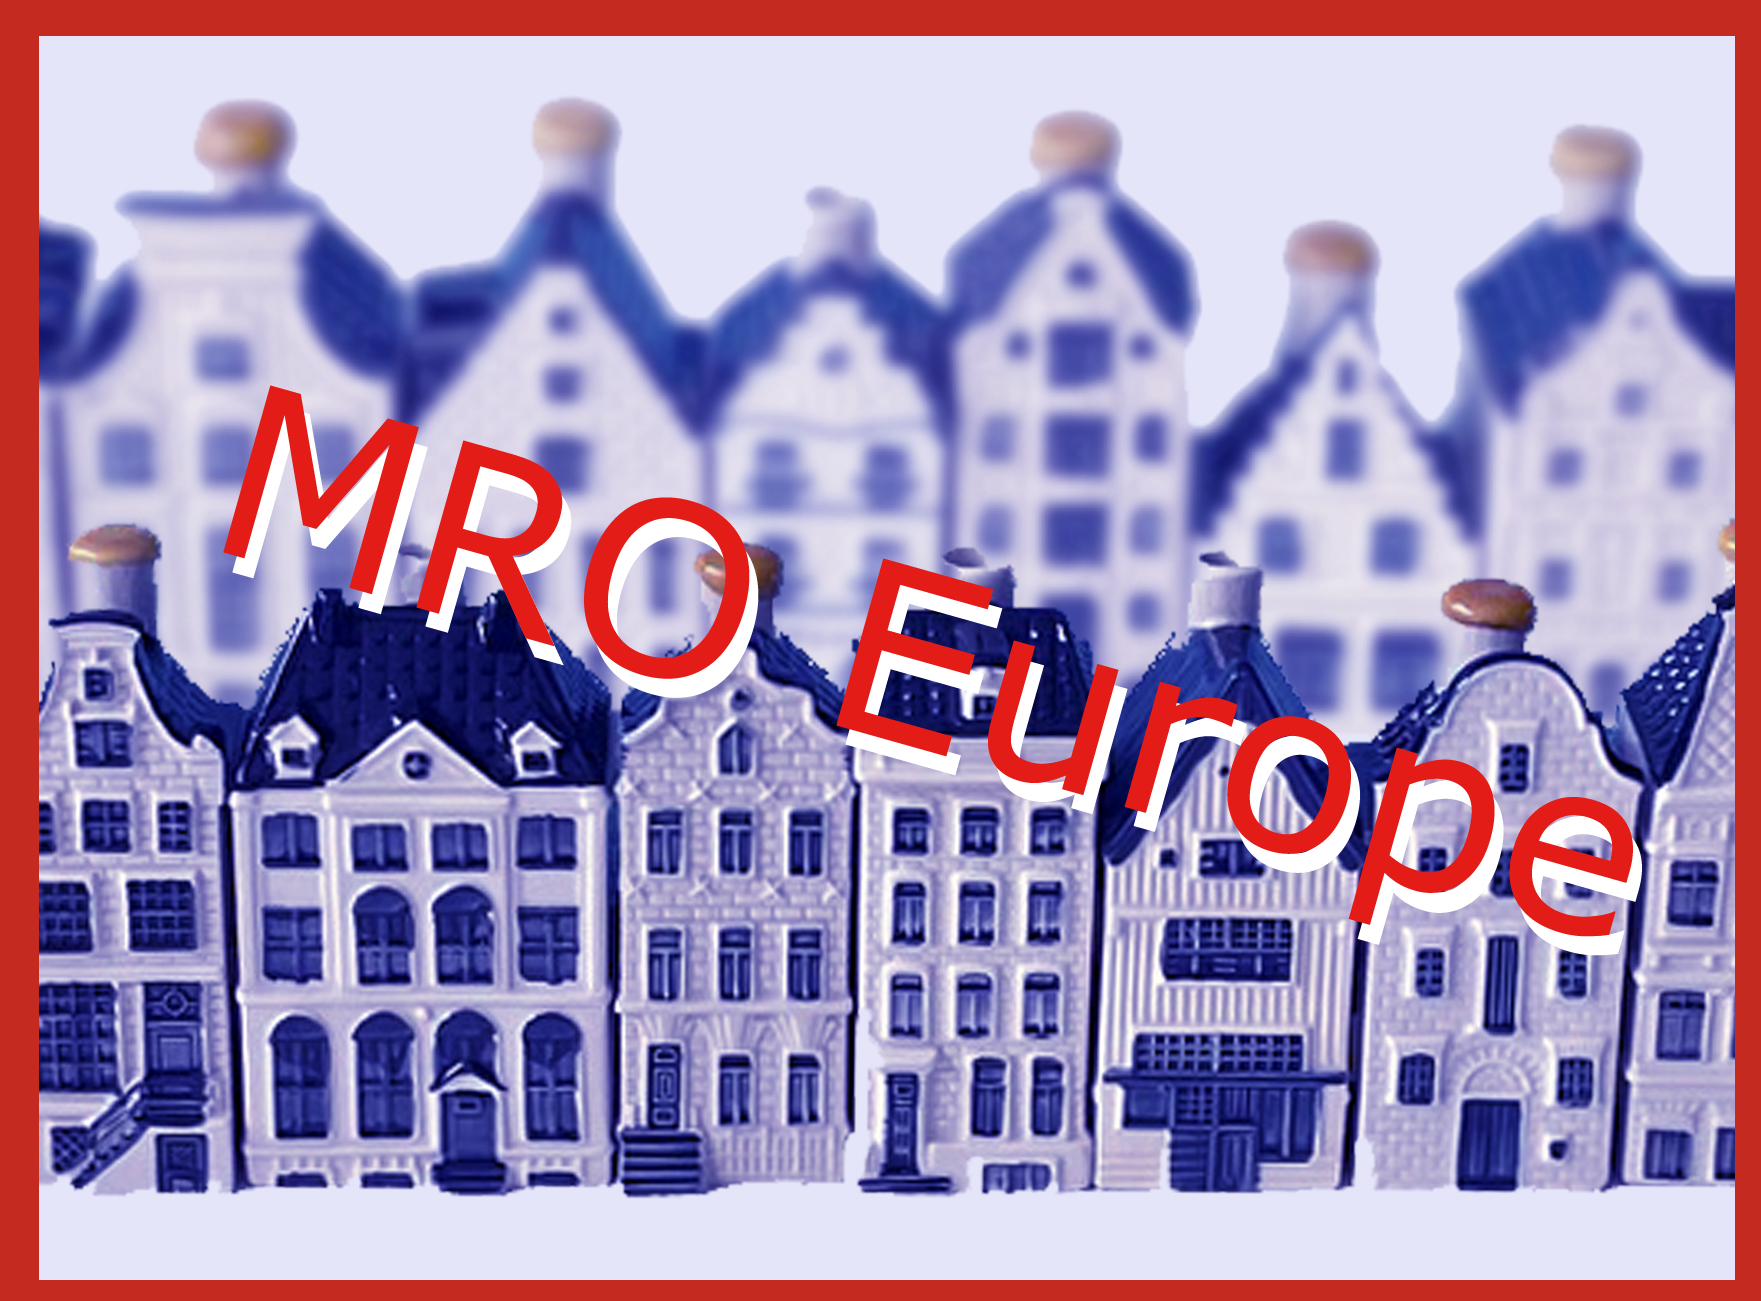 Meet us at MRO Europe in Amsterdam NEDAERO